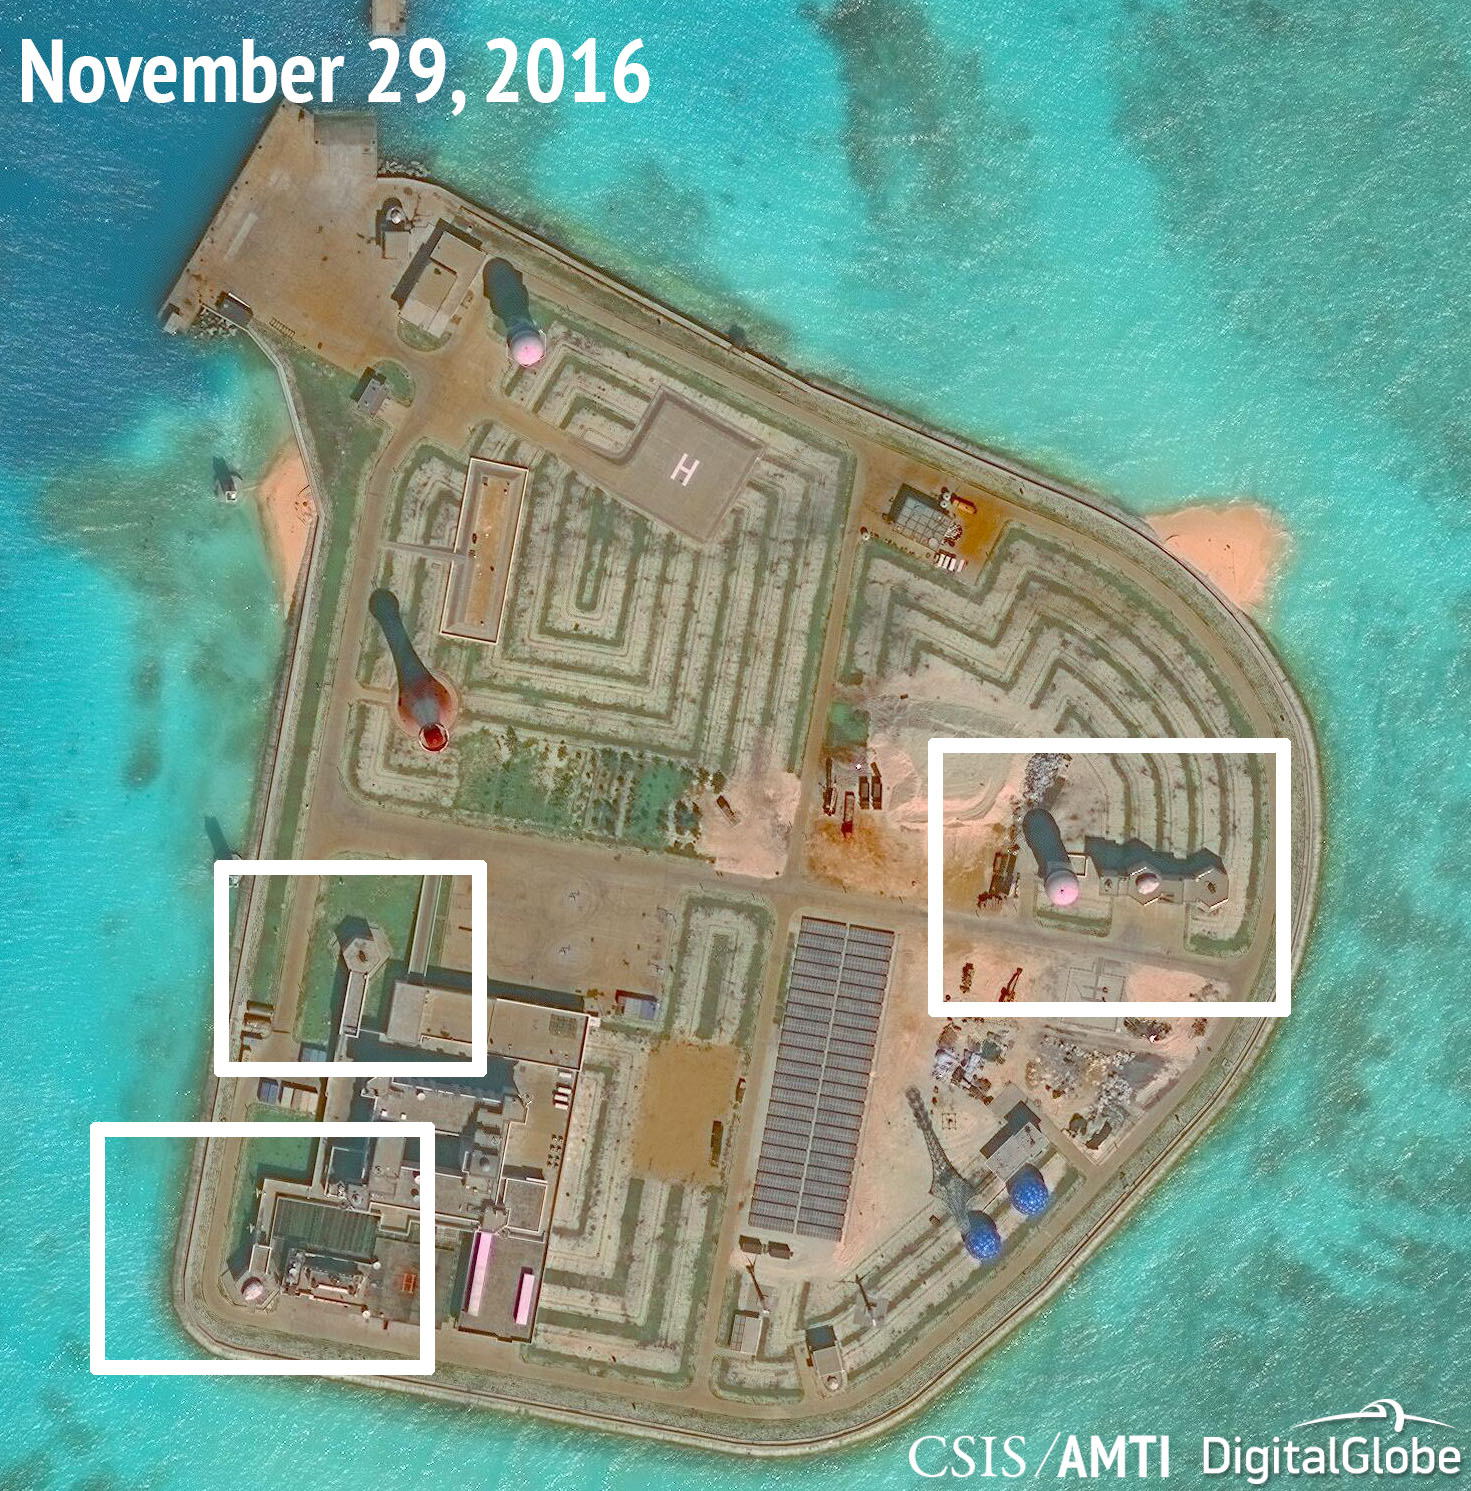 South China Sea tensions